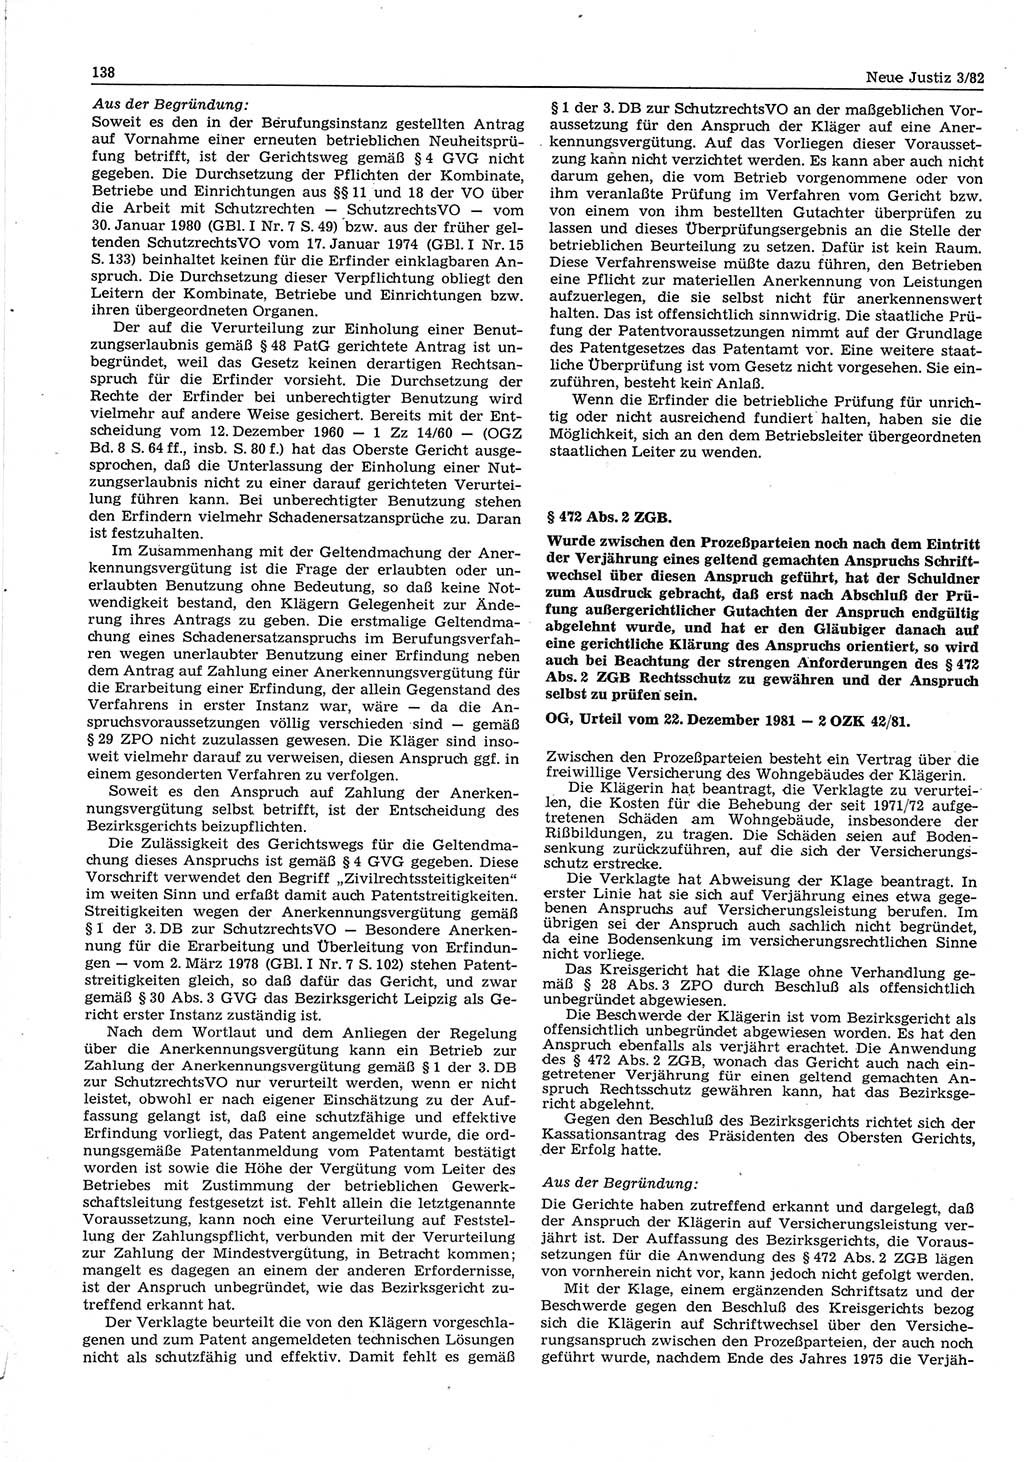 Neue Justiz (NJ), Zeitschrift für sozialistisches Recht und Gesetzlichkeit [Deutsche Demokratische Republik (DDR)], 36. Jahrgang 1982, Seite 138 (NJ DDR 1982, S. 138)